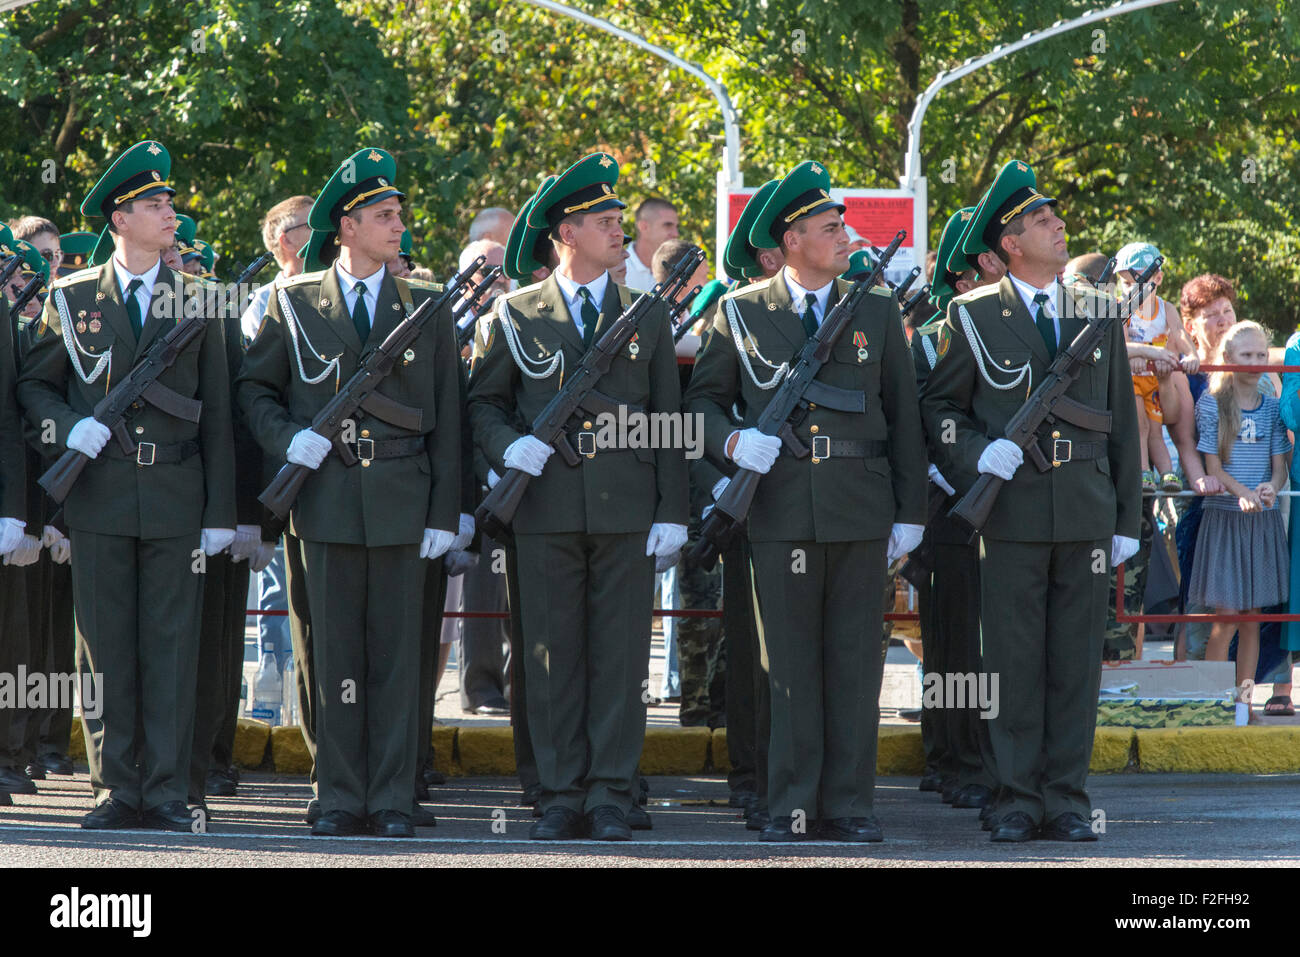 Soldaten, die ständige Aufmerksamkeit 25-jähriges Jubiläum der Schewtschenko moldauischen Republik PMR, Transnistrien, sowjetische UdSSR Moldau Stockfoto